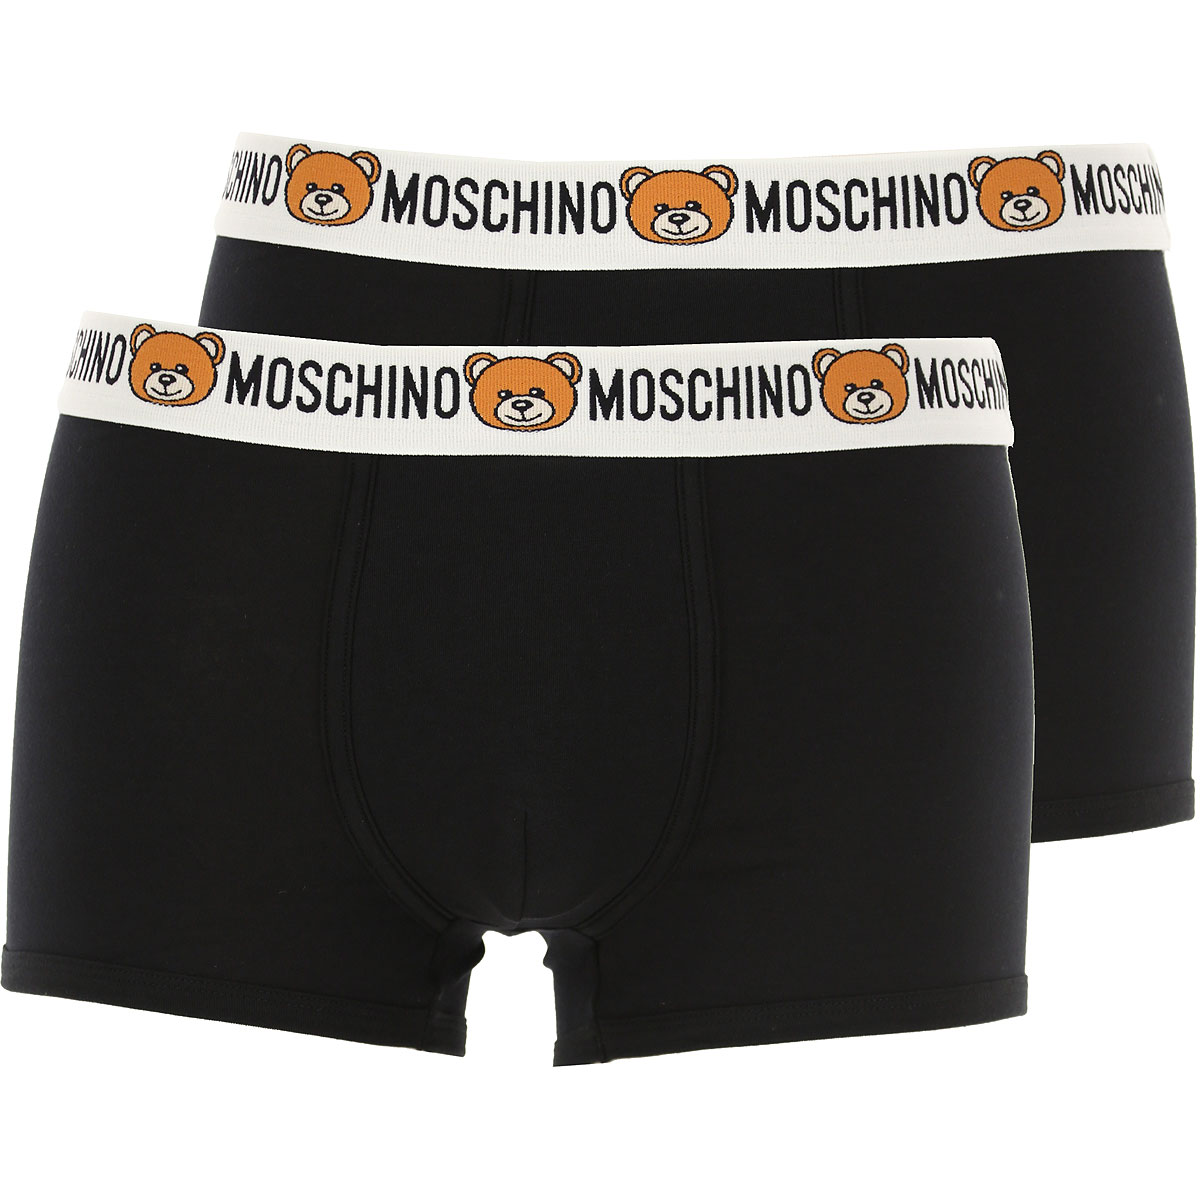 Moschino Boxer Shorts für Herren, Unterhose, Short, Boxer Günstig im Sale, 2 Pack, Schwarz, Baumwolle, 2017, S XS